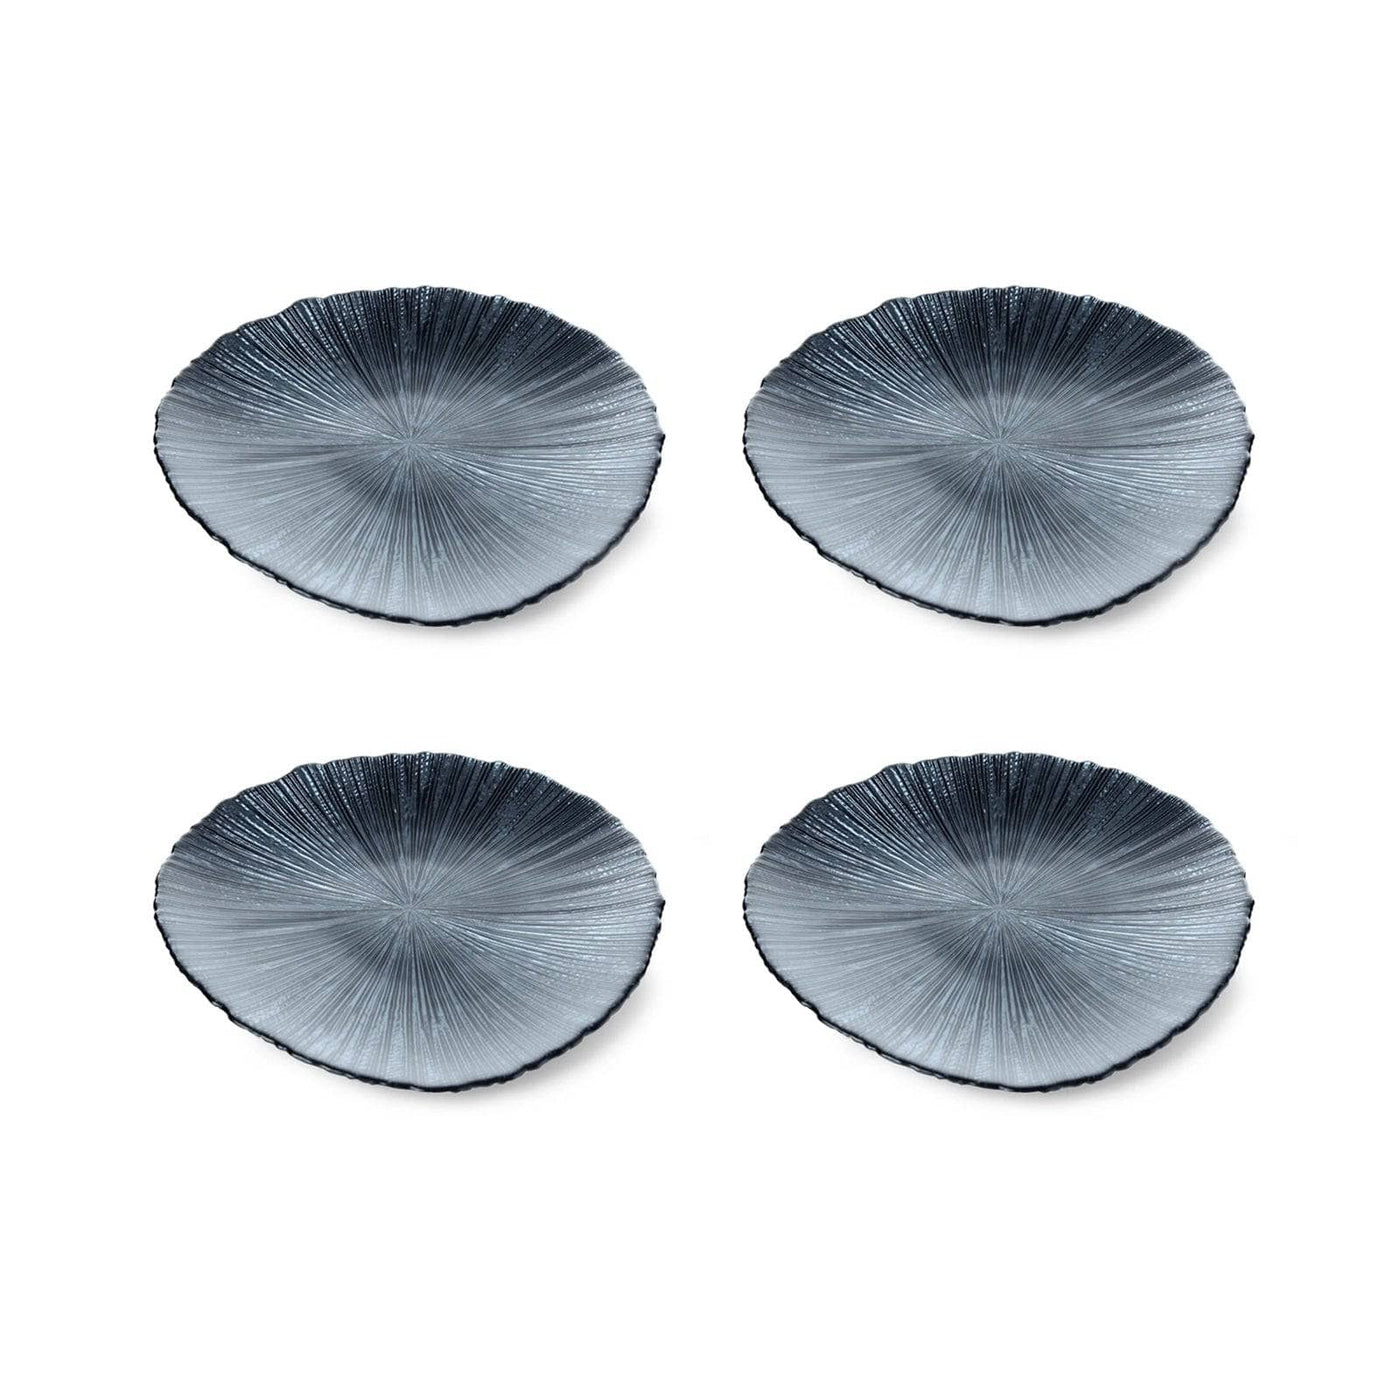 Tamara Set of 4 Side Plates, Charcoal Plates sazy.com